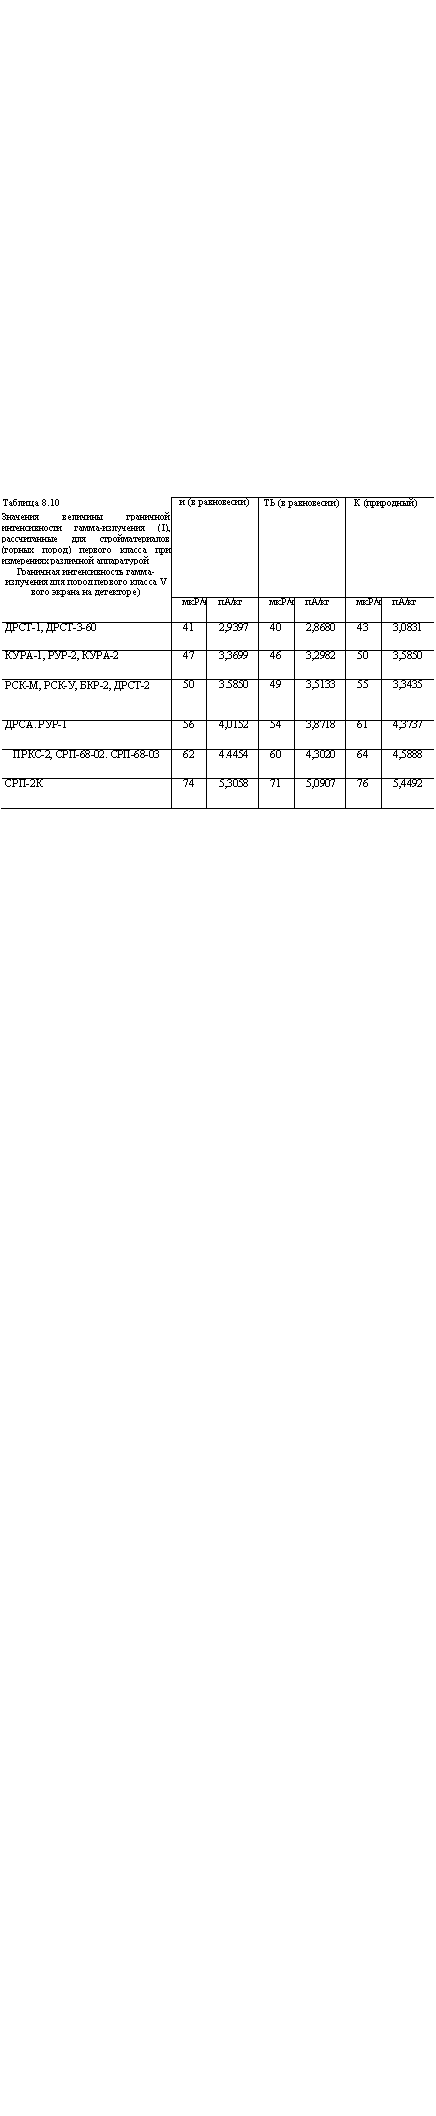 подпись: таблица 8.10
значения величины граничной интенсивности гамма-излучения (i), рассчитанные для стройматериалов (горных пород) первого класса при измерениях различной аппаратурой
граничная интенсивность гамма-излучения для пород первого класса v
вого экрана на детекторе) и (в равно-весии) ть (в равно-весии) к (природный)
 мкр/ч па/кг мкр/ч па/кг мкр/ч па/кг
дрст-1, дрст-3-60 41 2,9397 40 2,8680 43 3,0831
кура-1, рур-2, кура-2 47 3,3699 46 3,2982 50 3,5850
рск-м, рск-у, бкр-2, дрст-2 50 3.5850 49 3,5133 55 3,3435
дрса. рур-1 56 4,0152 54 3,8718 61 4,3737
пркс-2, срп-68-02. срп-68-03 62 4.4454 60 4,3020 64 4,5888
срп-2к 74 5,3058 71 5,0907 76 5,4492
